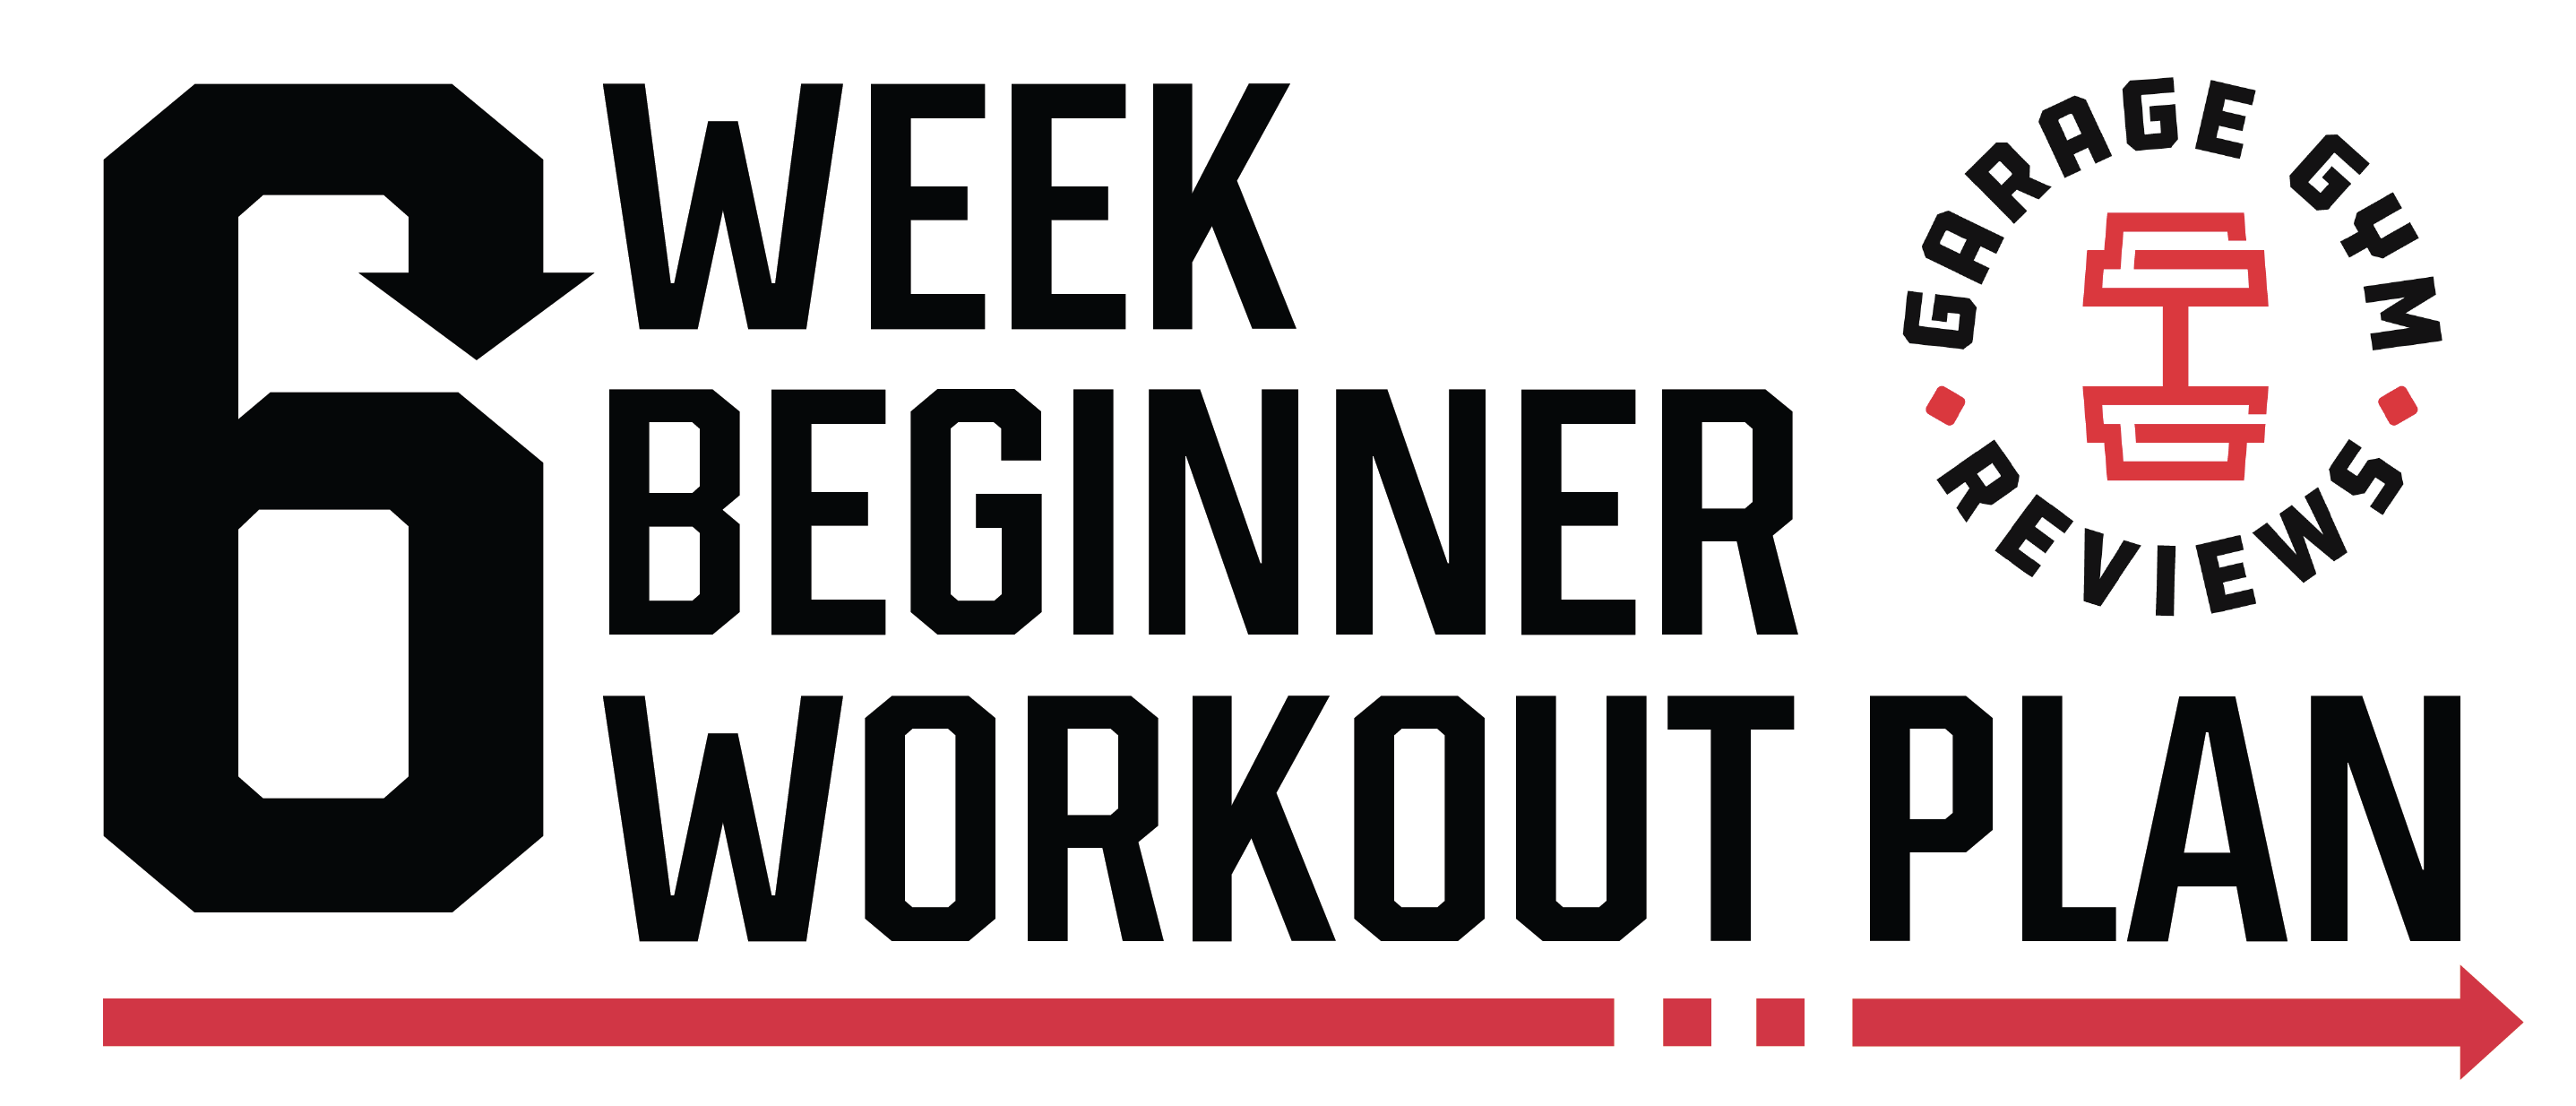 Workout Plans, Workout Programs